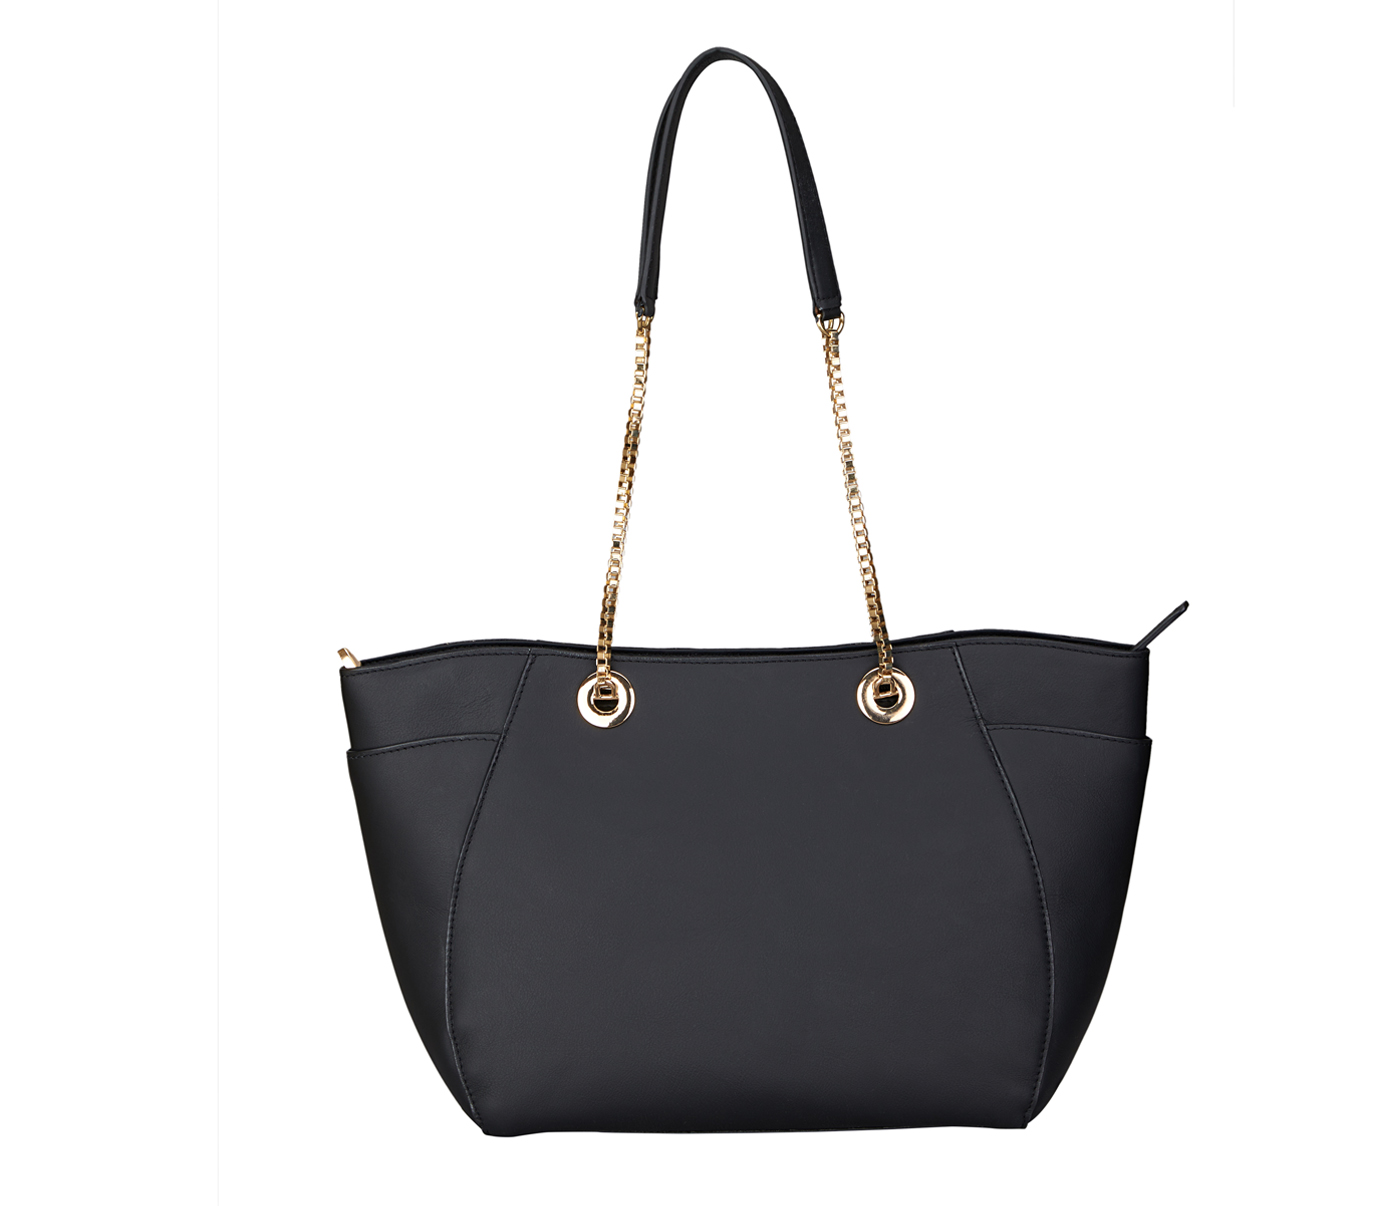 B900-Luisa-Shoulder work bag in Genuine Leather - Black